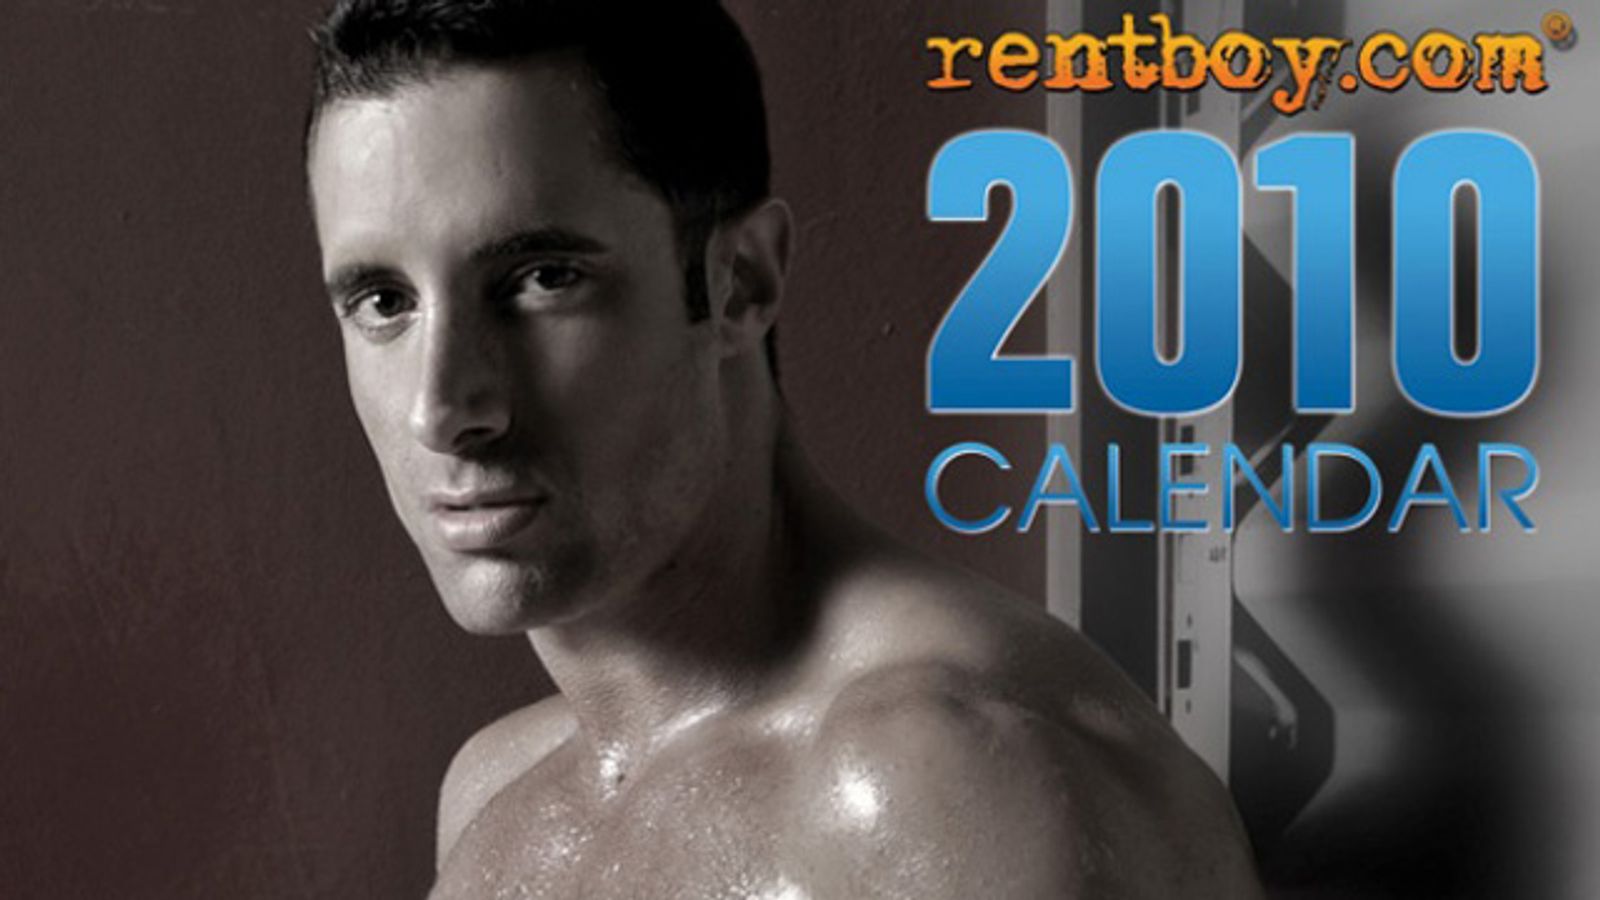 Gio Caruso’s Photography Defines Rentboy's 2010 Calendar